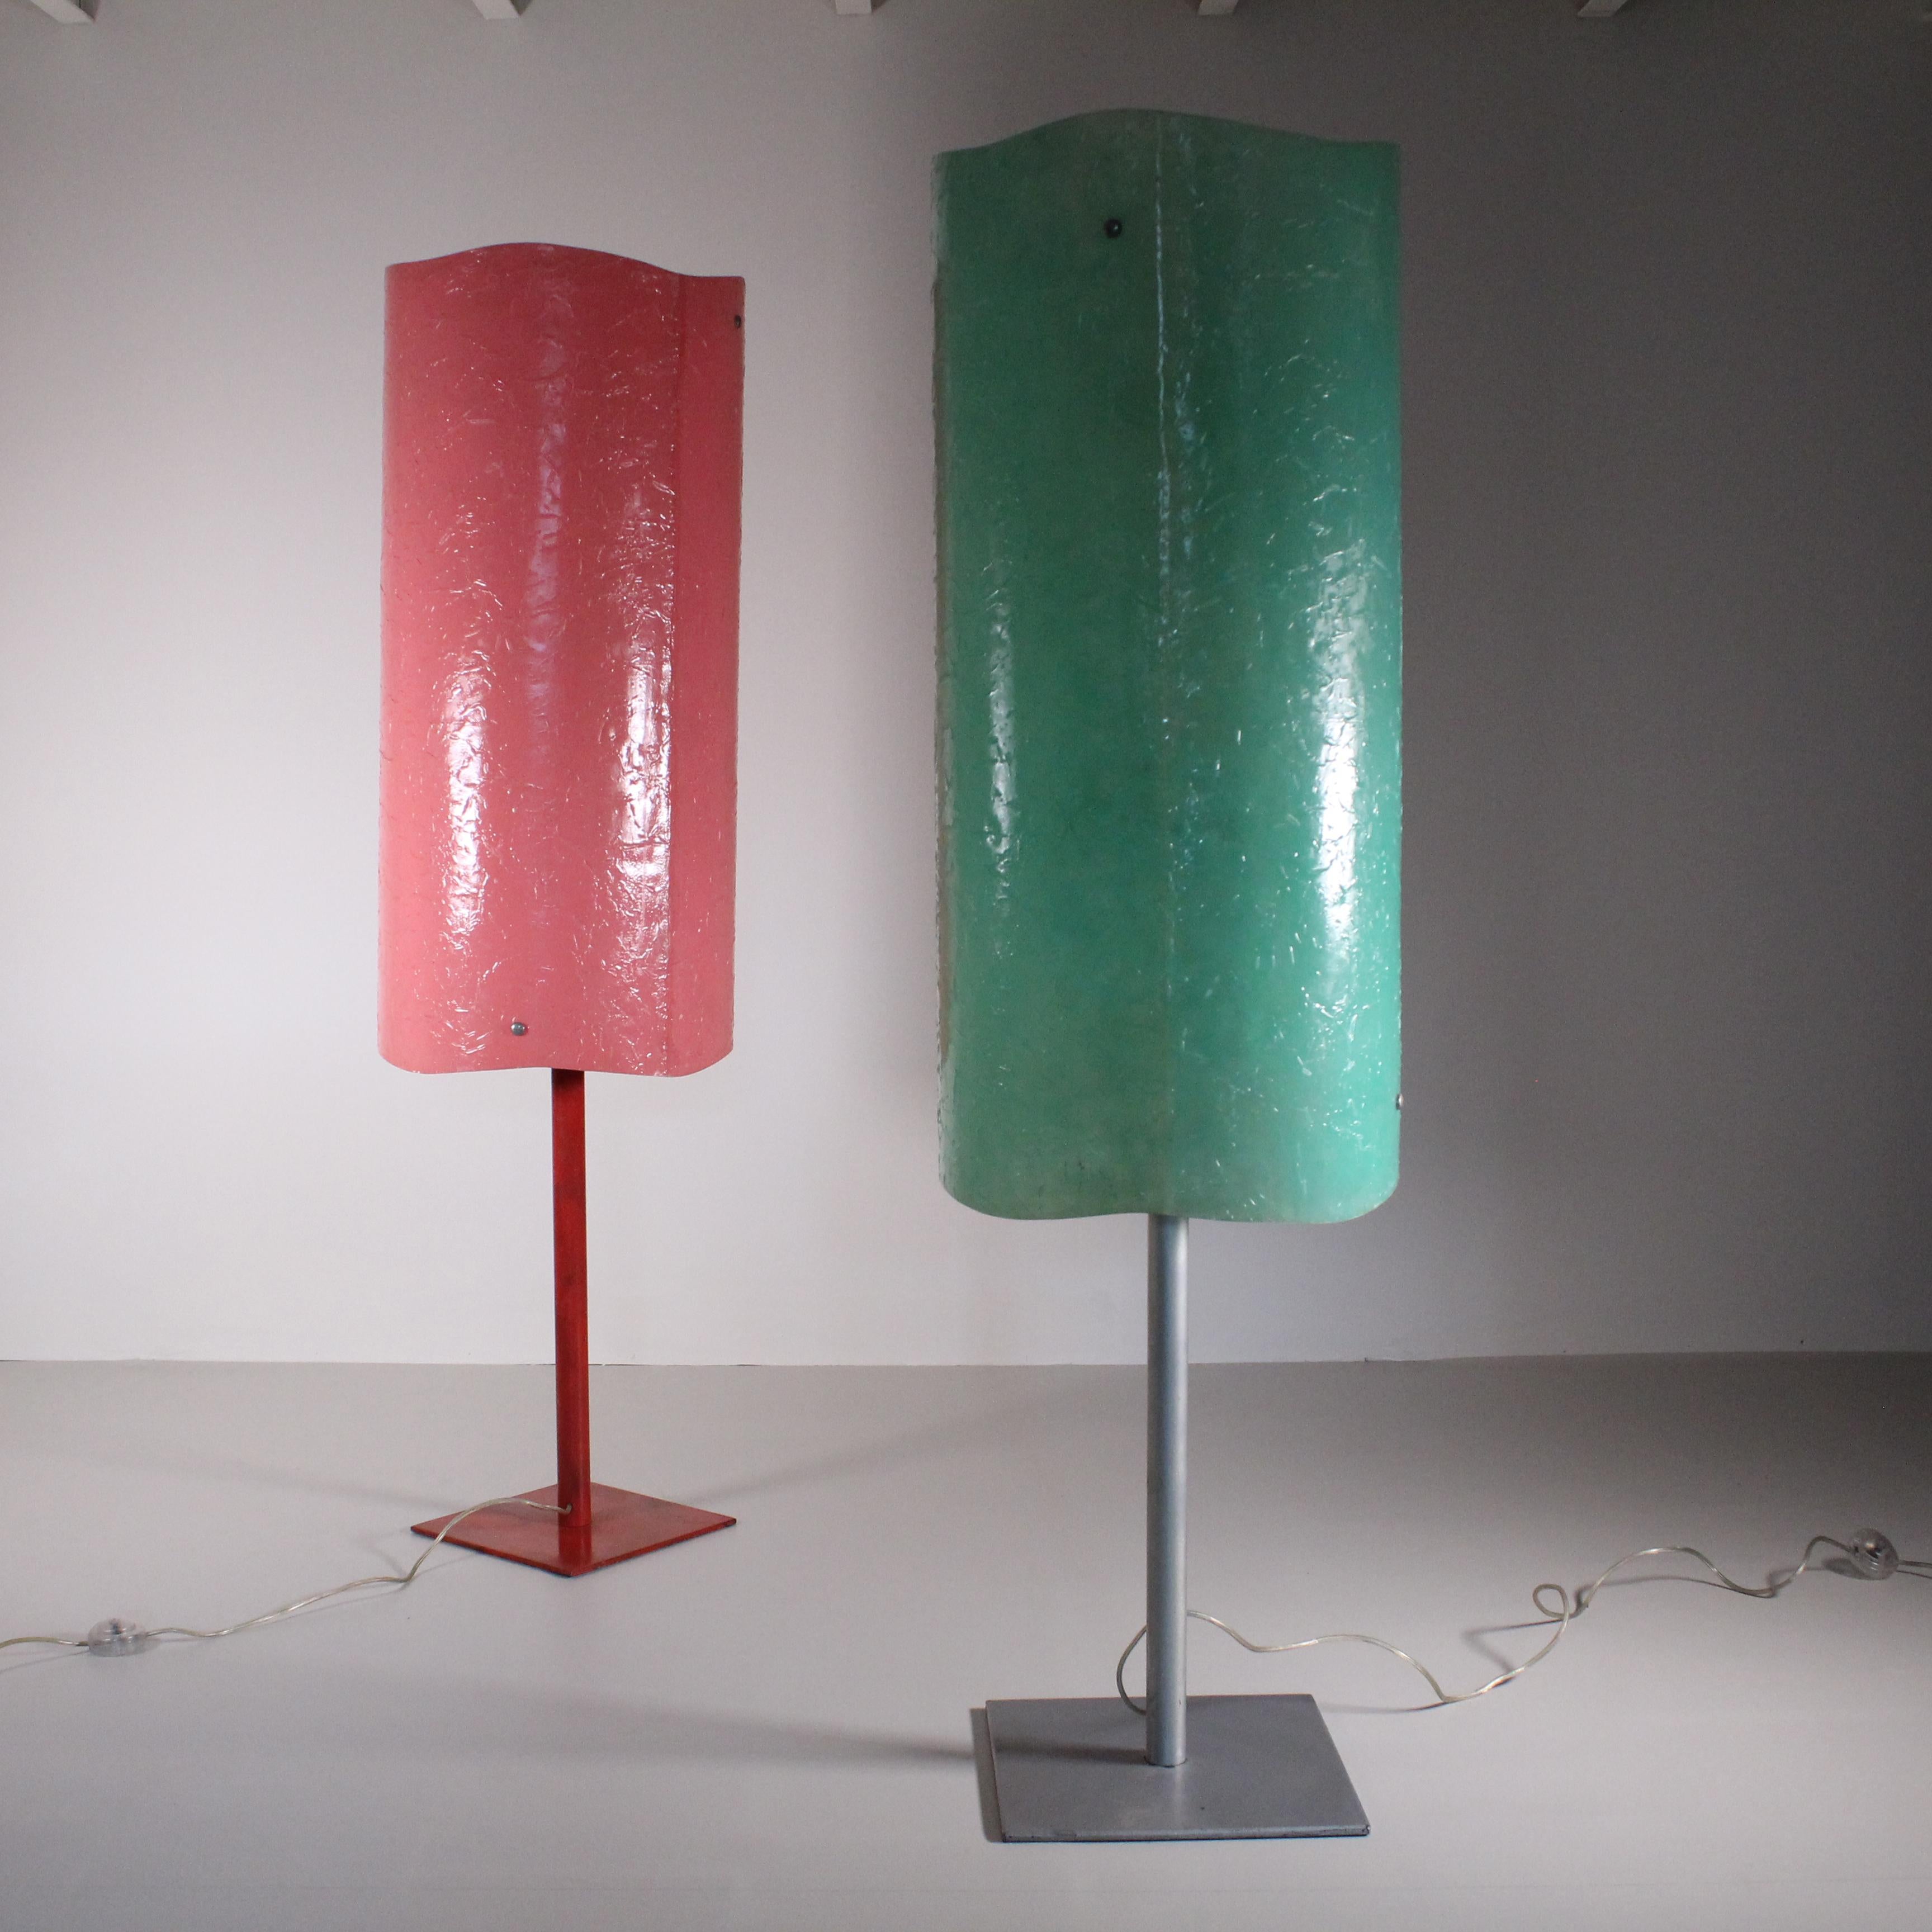 paire de lampadaires en résine, probablement inspirés par le travail de Gaetano Pesce sur la résine, ces deux lampes sont vraiment uniques et introuvables. Provenant d'une villa en Toscane, avec d'autres objets uniques, ces deux lampes sont